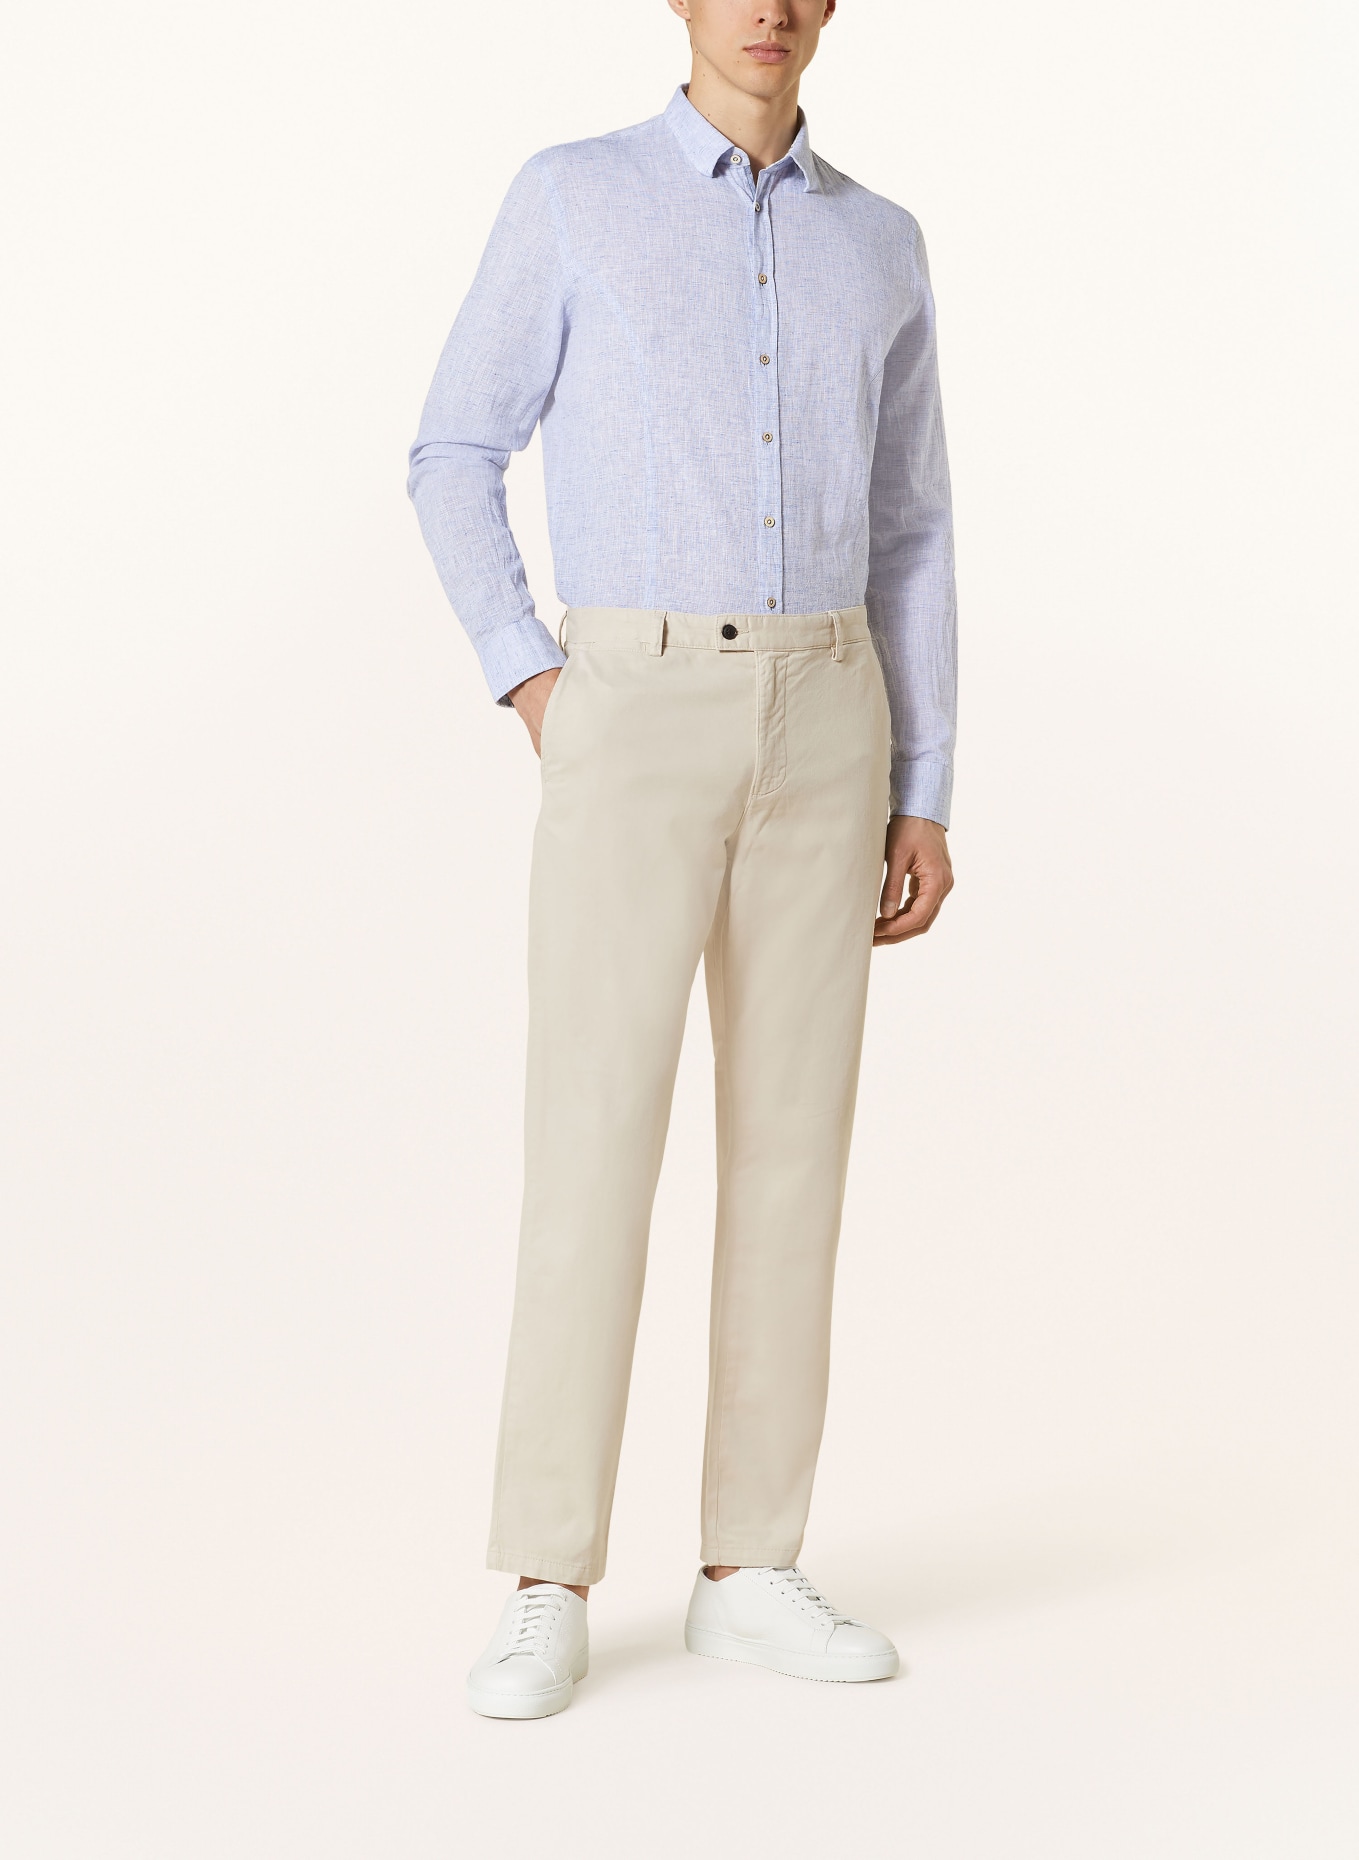 Q1 Manufaktur Hemd Extra Slim Fit mit Leinen, Farbe: BLAU (Bild 2)